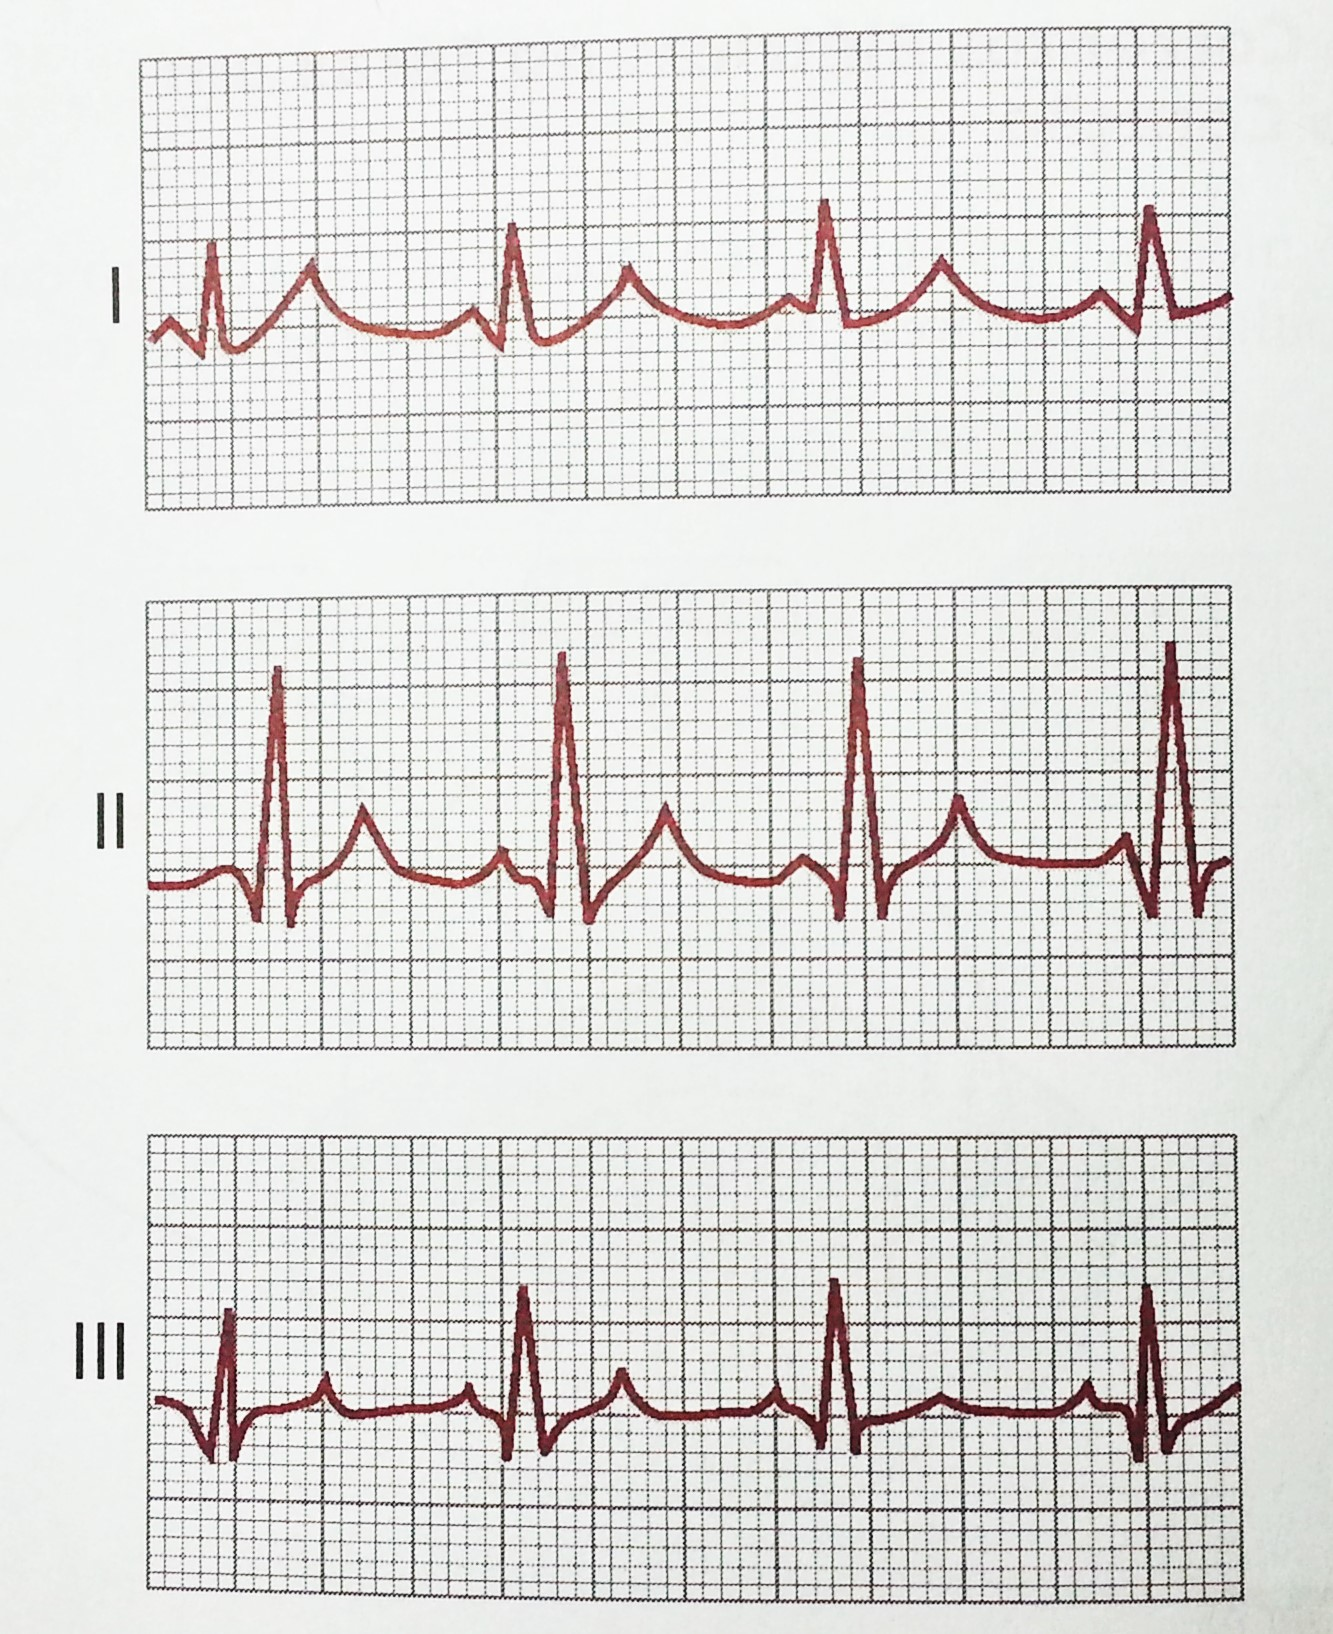 28 Pelo eletrocardiograma das derivações I, II e III ilustrado pela Figura 5, observa-se que essas três derivações tem sinais eletrocardiográficos similares, sendo que as ondas P, QRS e T são